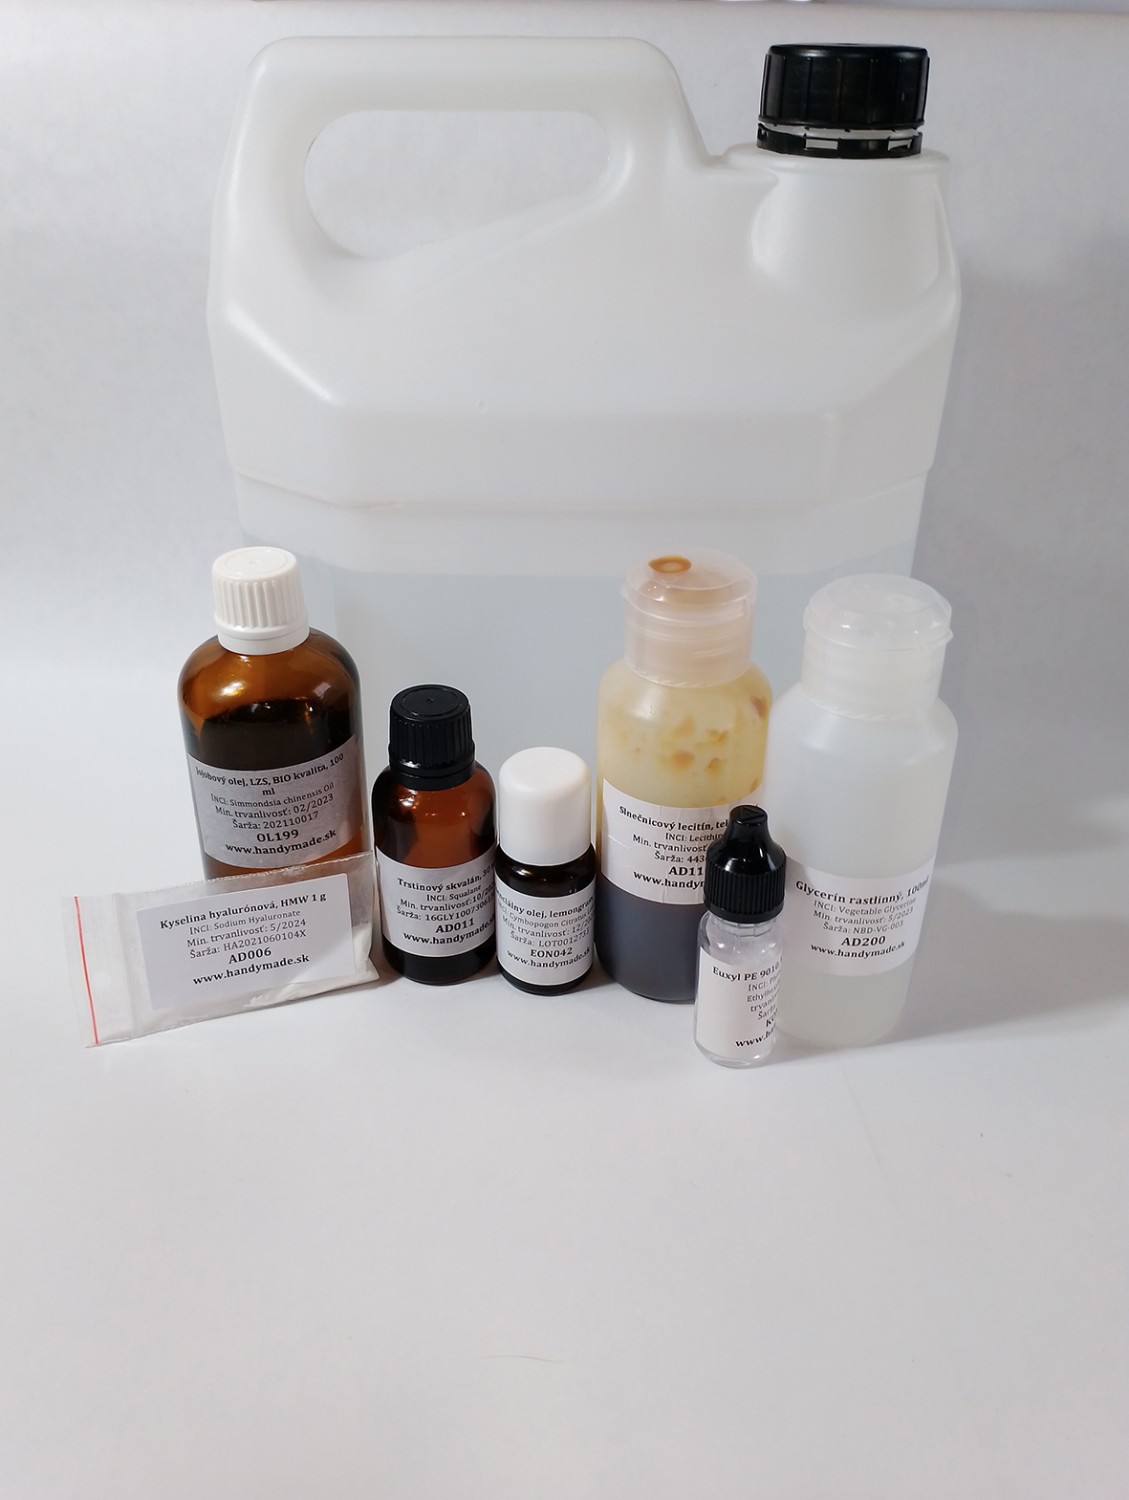 Suroviny na výrobu pleťovéo gélu s kyselinou hyalurónovou vo fľaškách, sáčkoch a nádobkách na bielom pozadí.